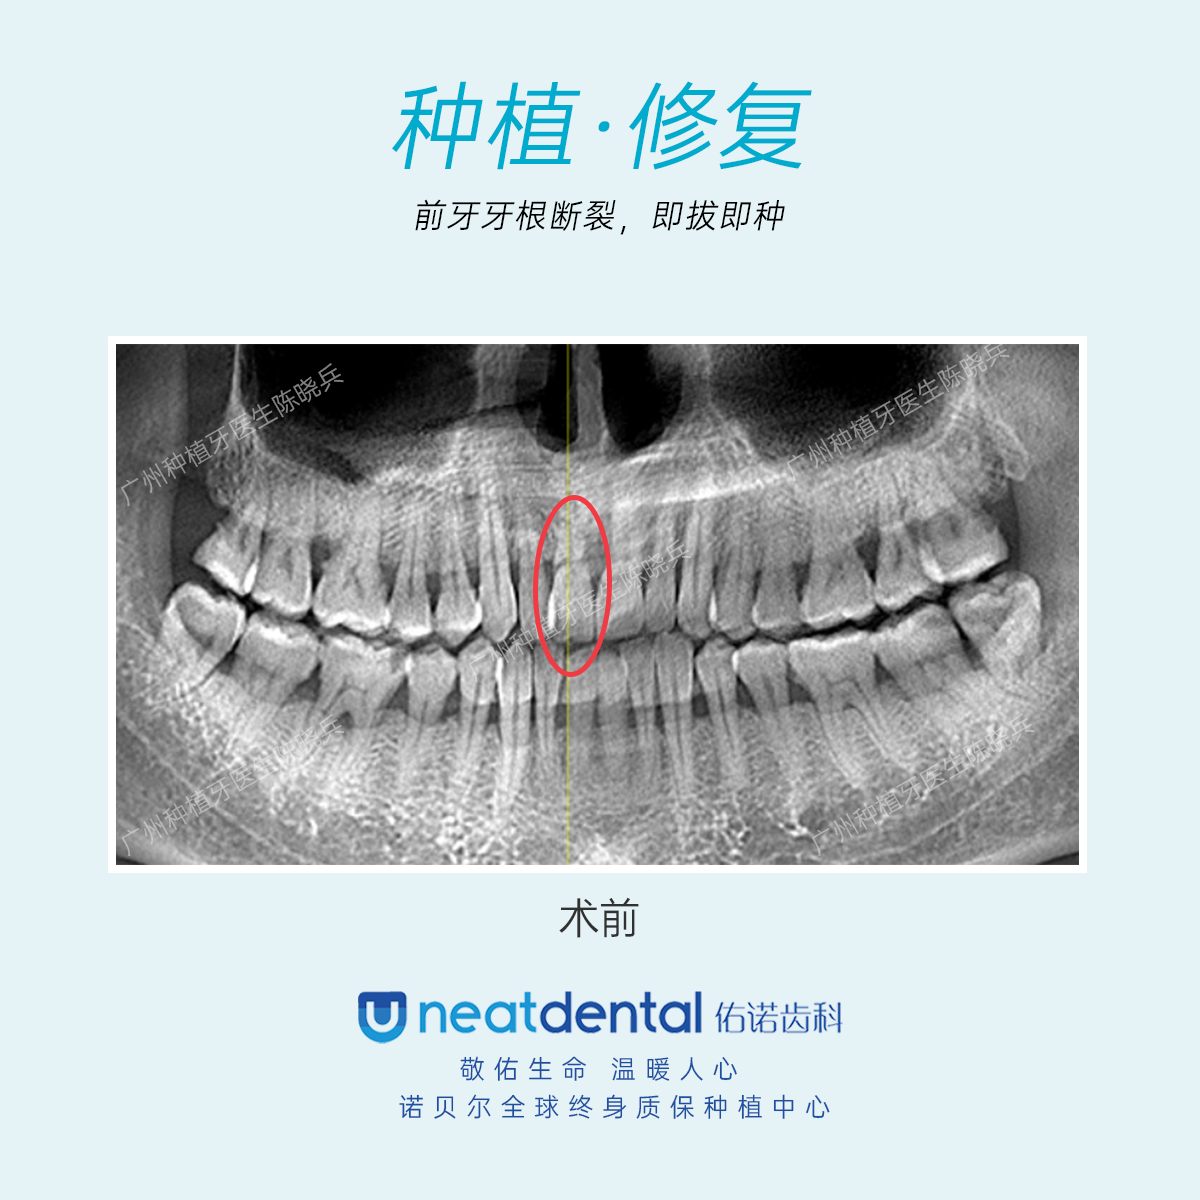 患者右上中切牙牙根断裂,cbct测量发现剩余牙根较短,不能保留,于是